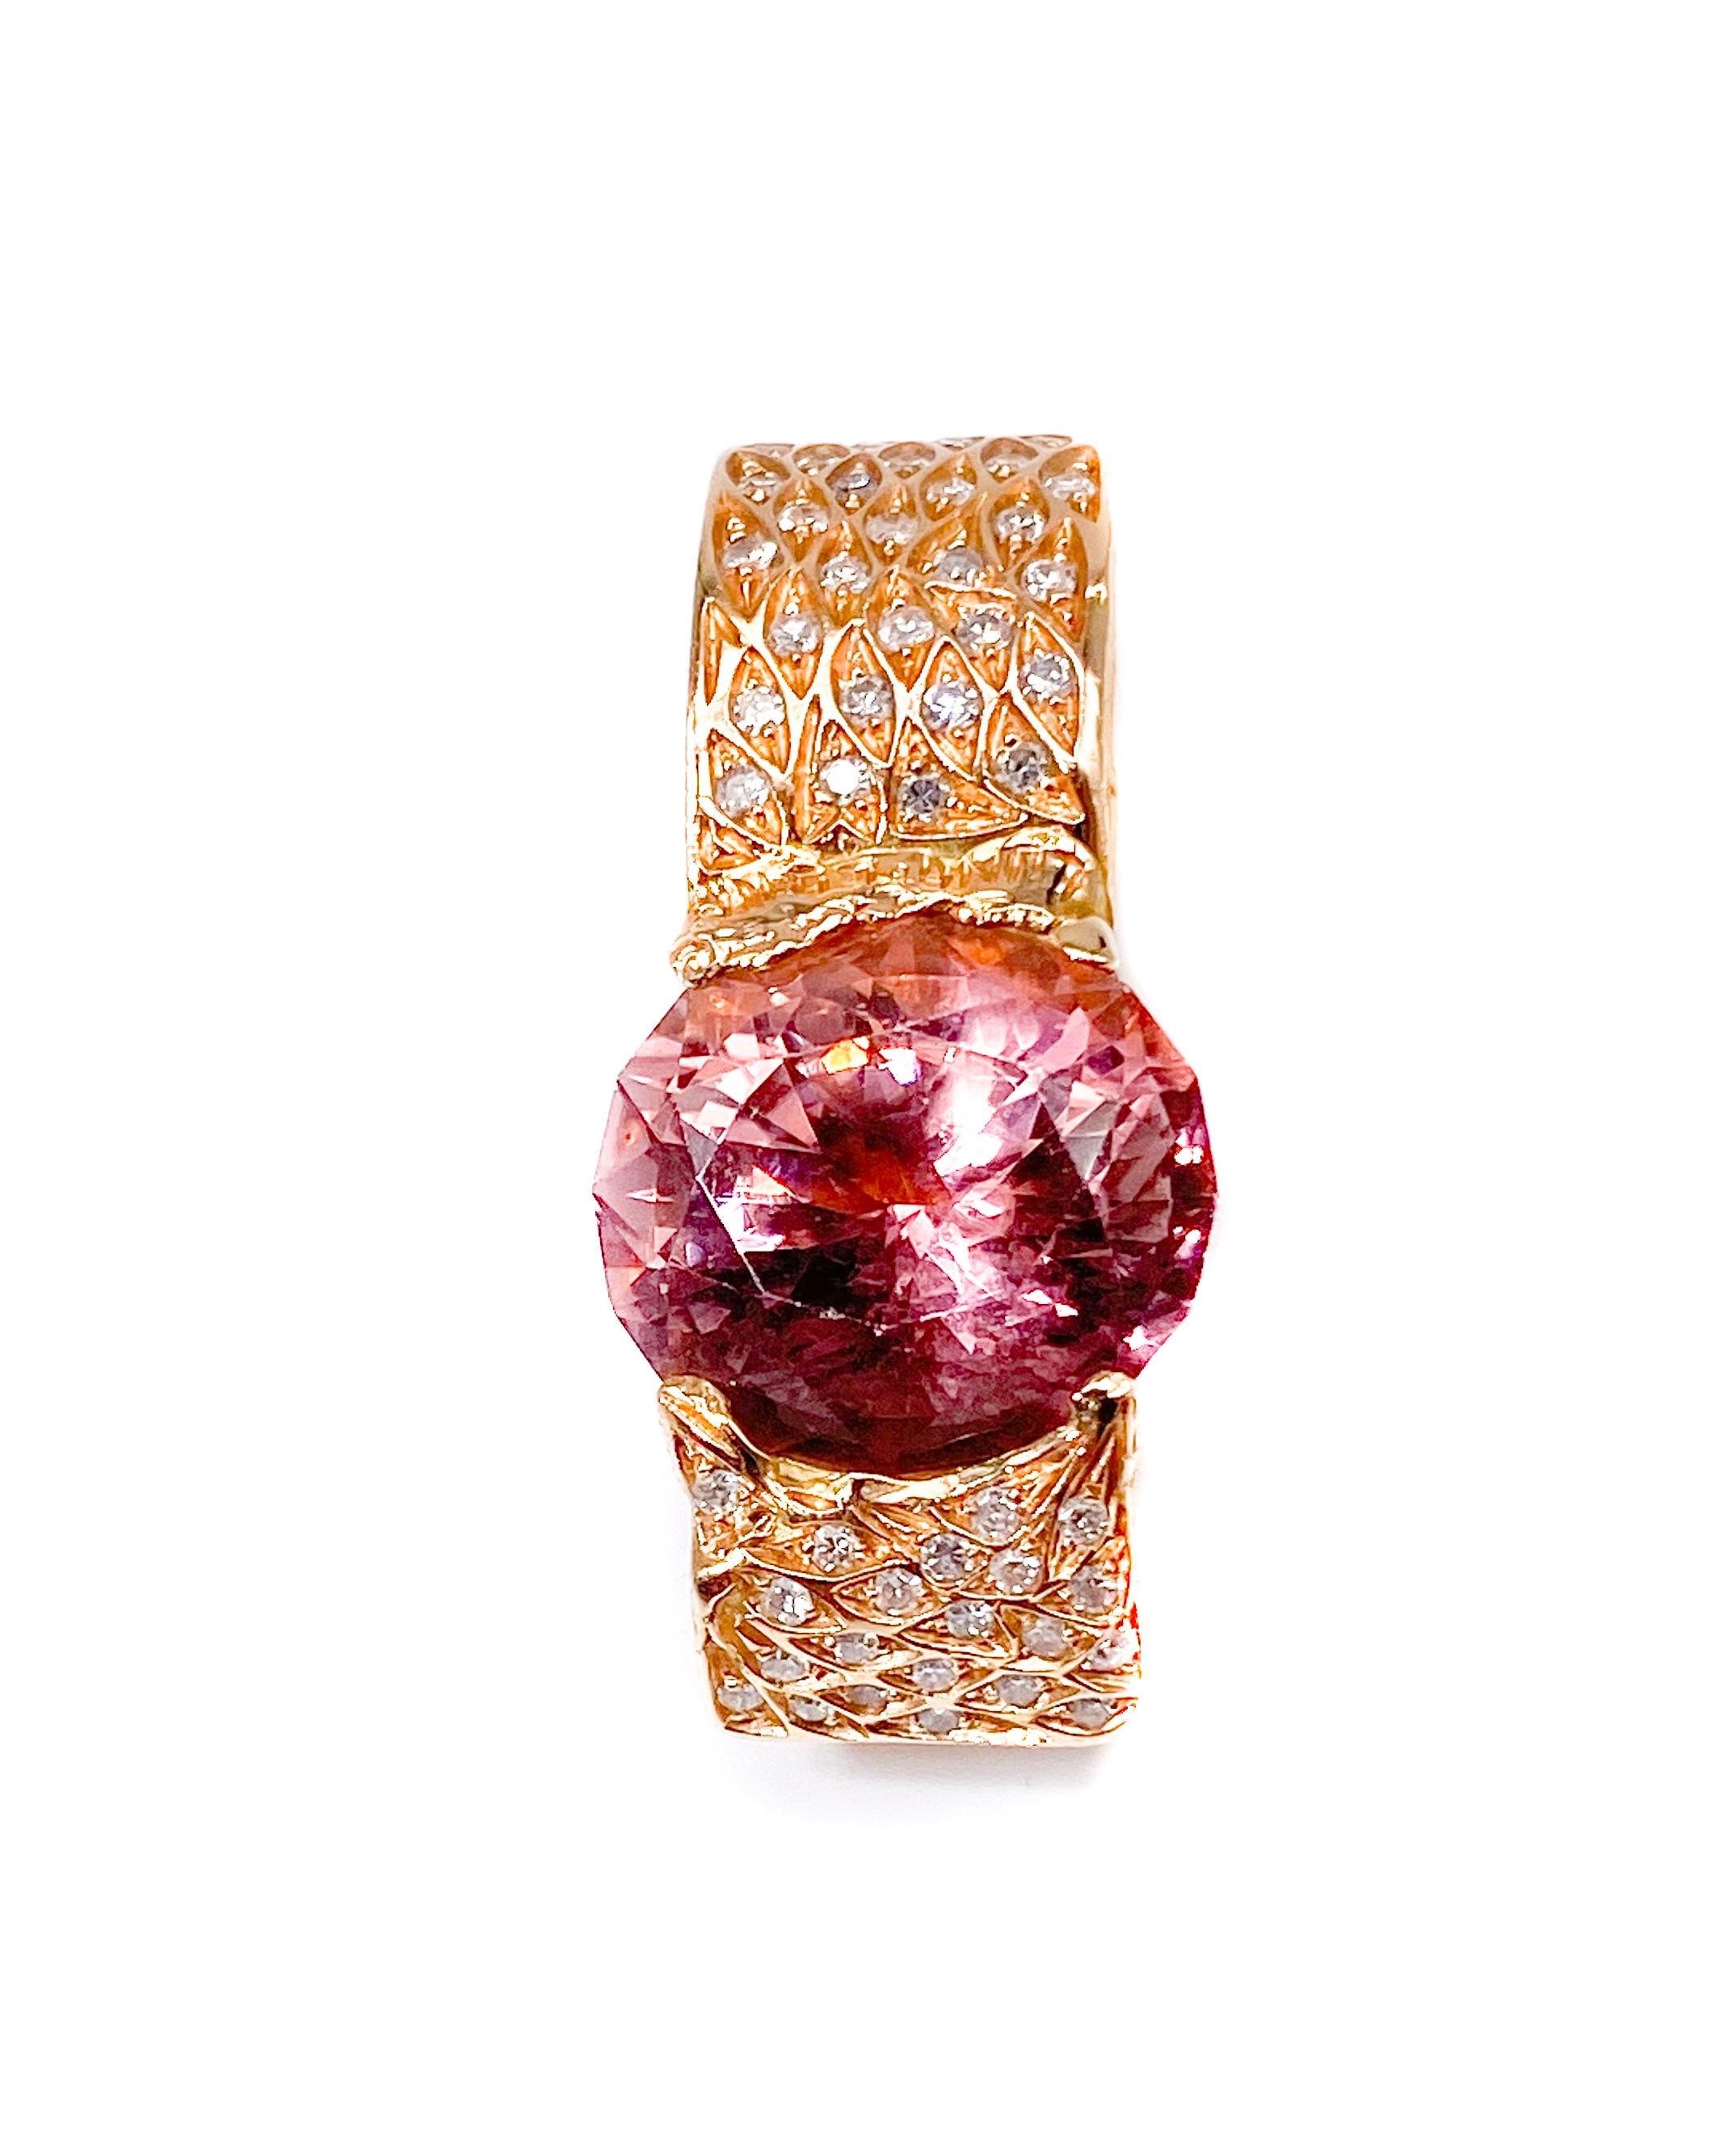 Oval Cut 18 Karat Rose Gold Ring with Red Tourmaline ‘Carat 12’ and Diamonds ‘Carat.1.36’